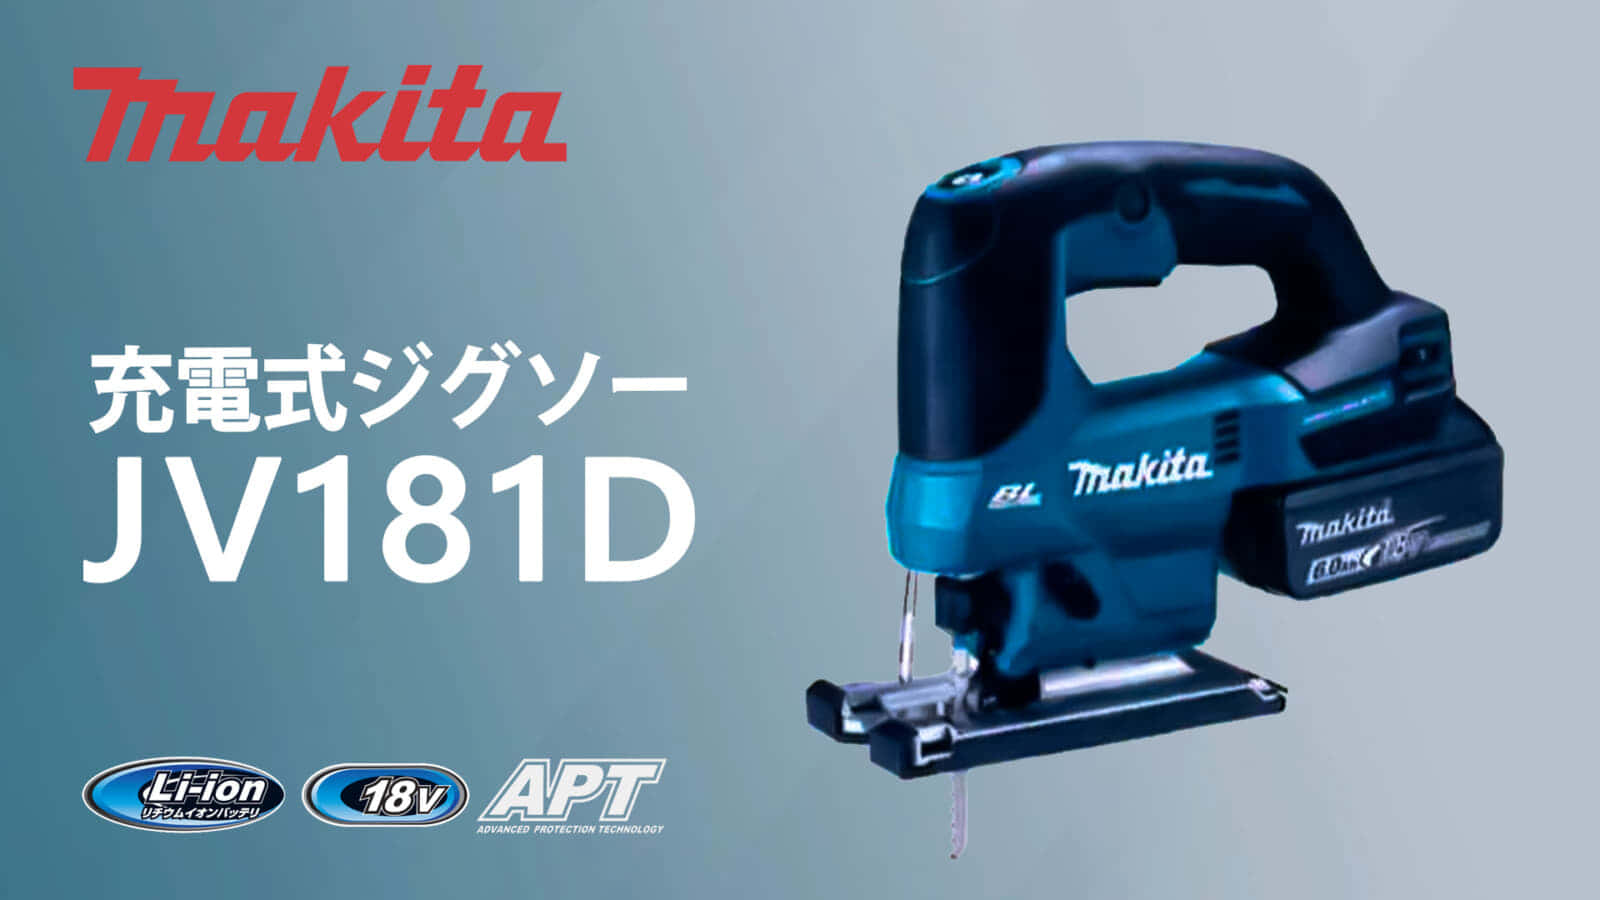 マキタ JV184D 充電式ジグソーを発売、低価格なスタンダードモデル 